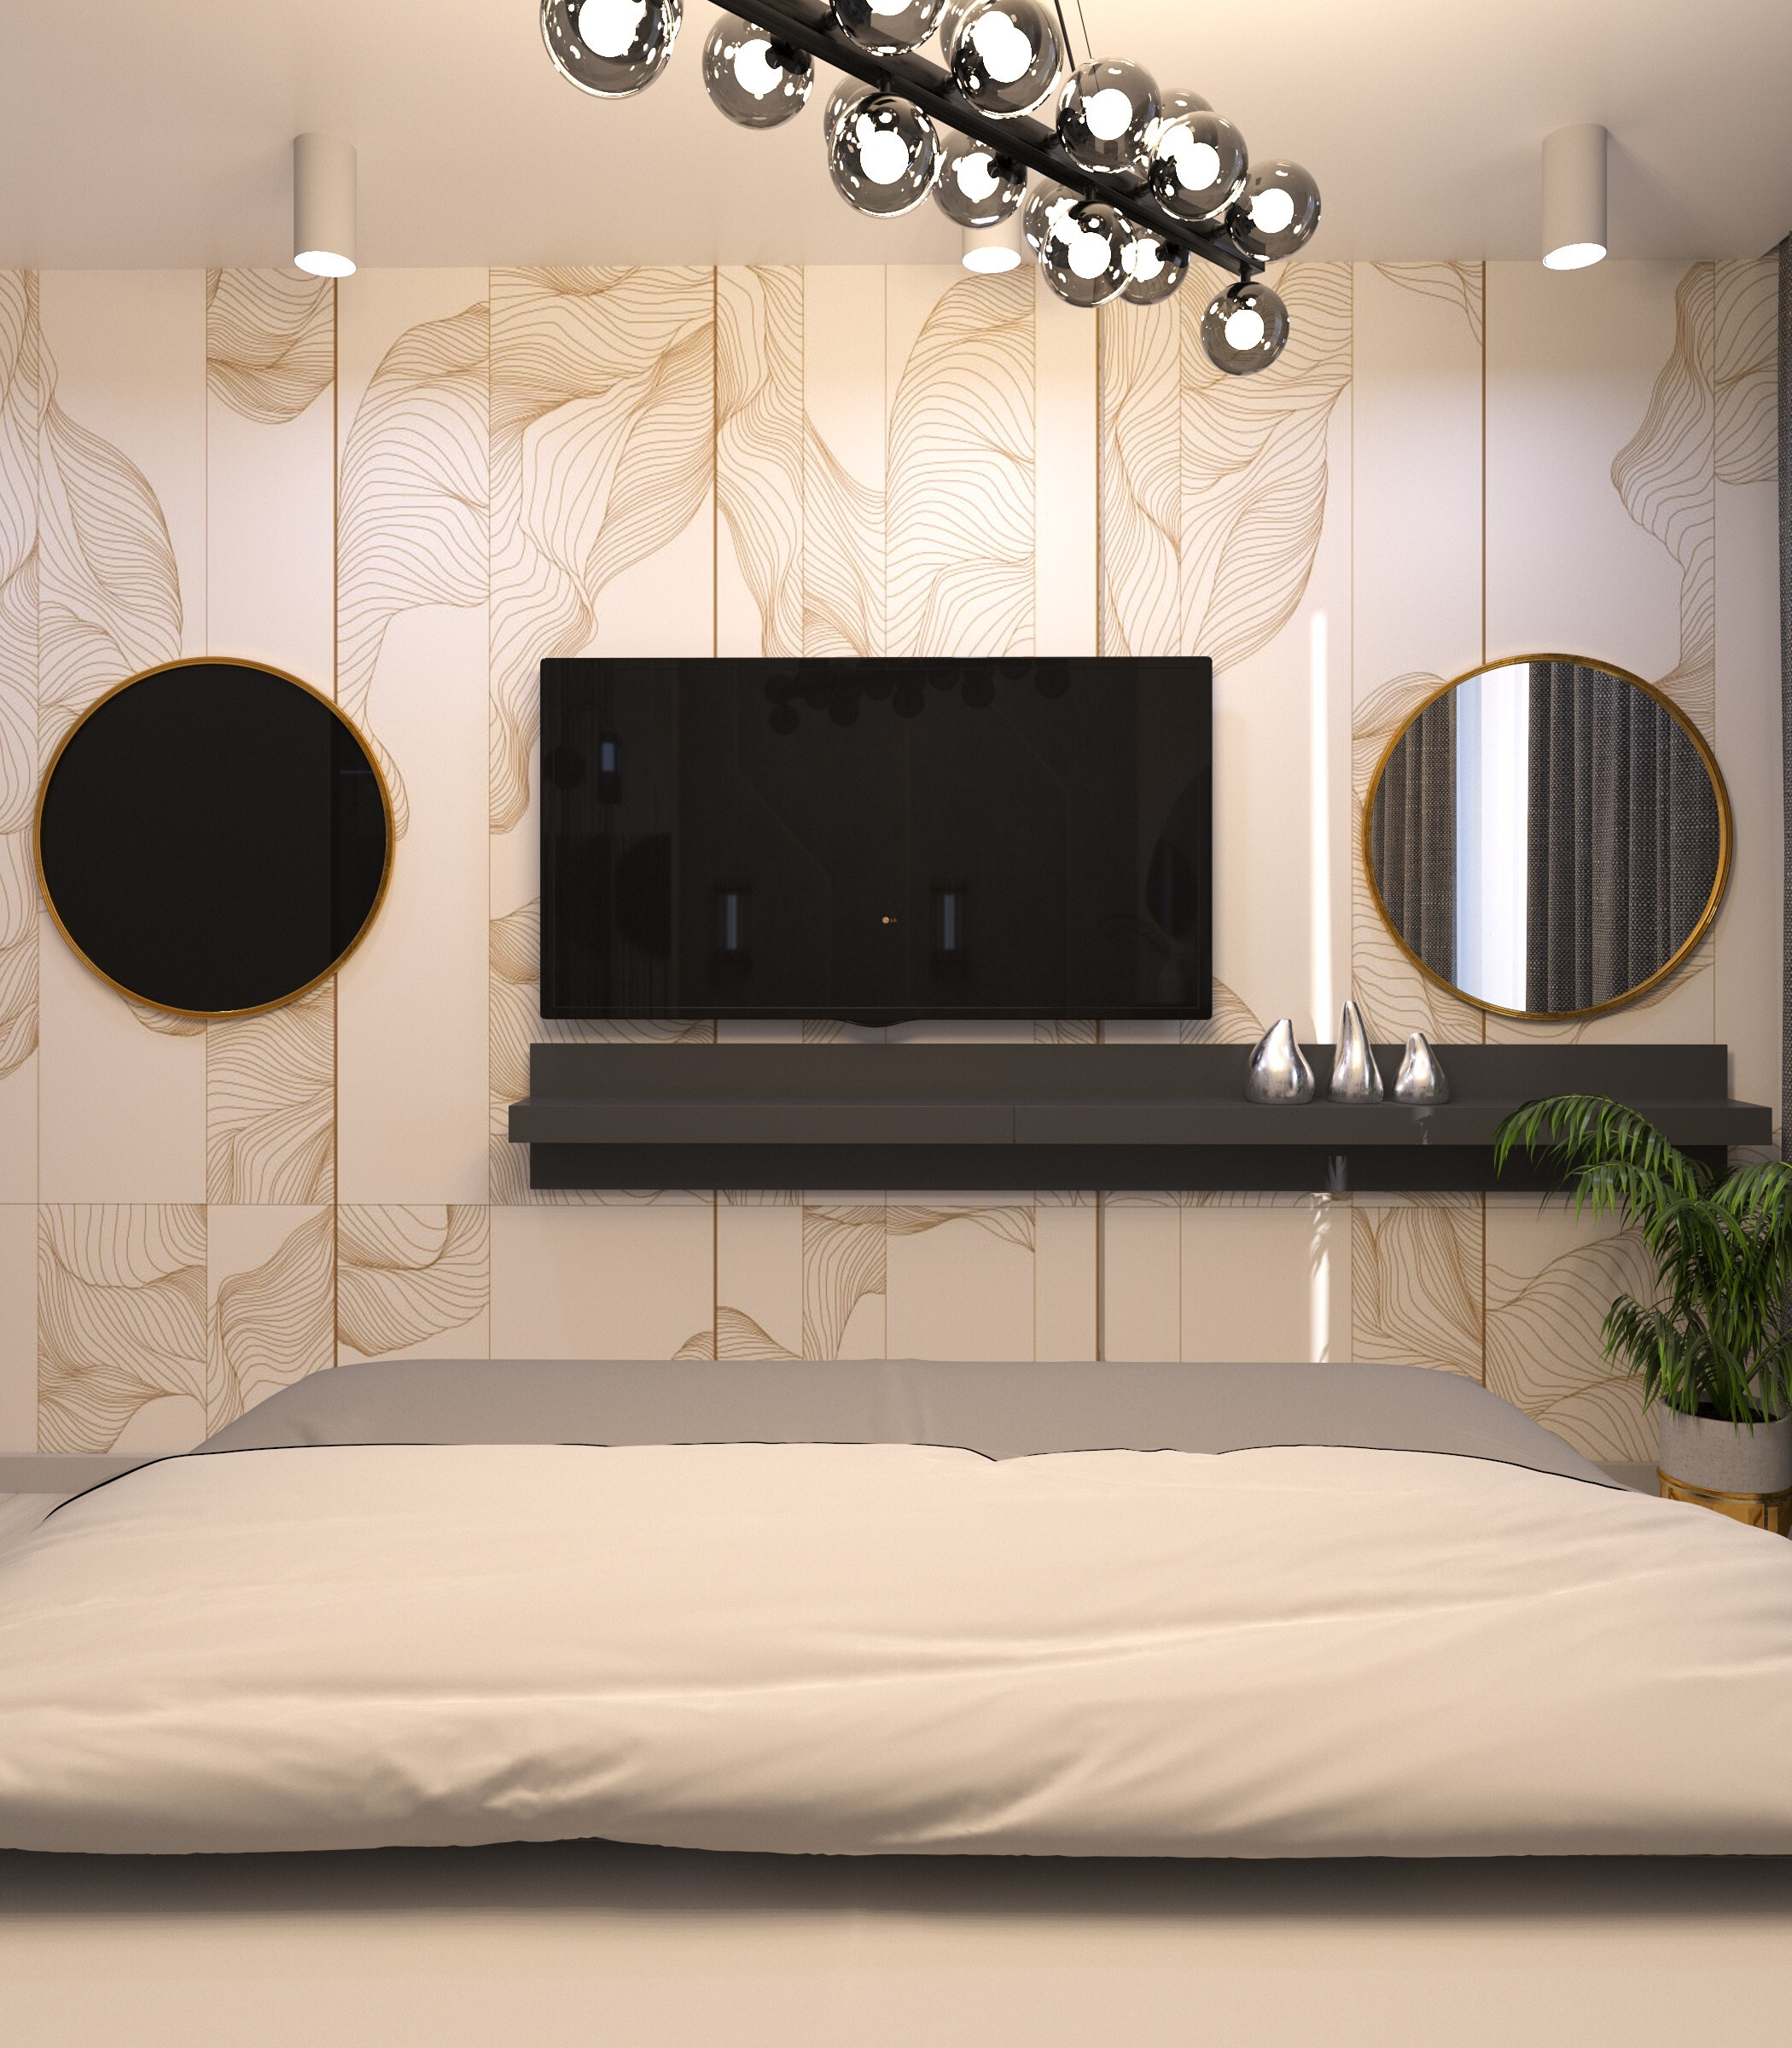 Интерьер спальни с панно за телевизором в современном стиле